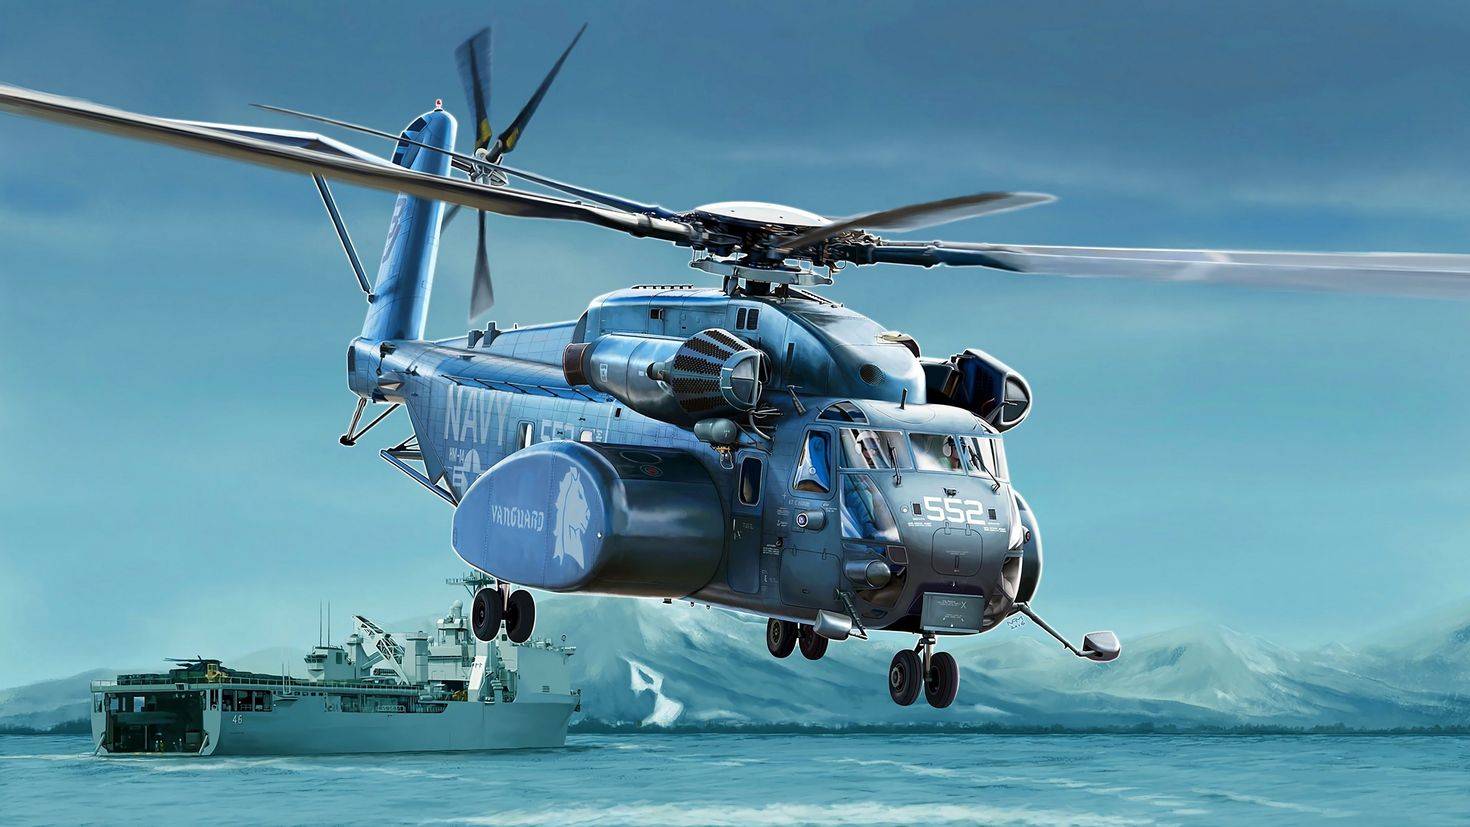 Транспортный вертолет ch-53k king stallion, основные технические свойства и характеристики.